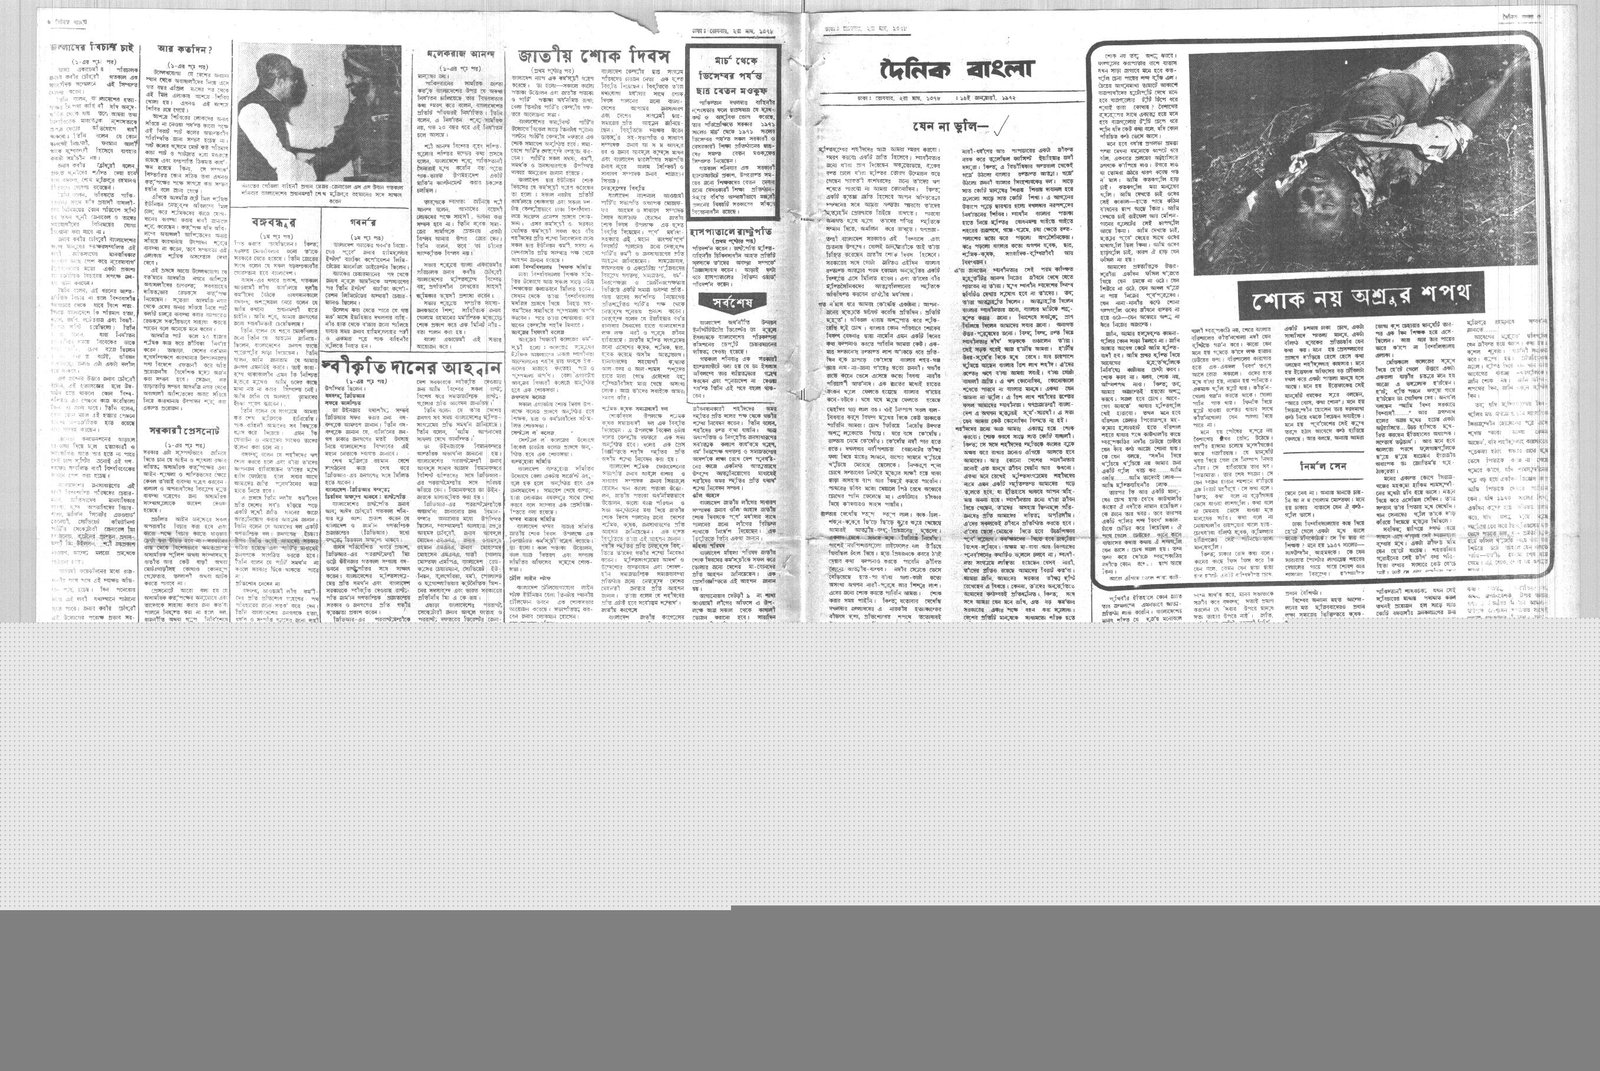 16JAN1972-DAINIK BANGLA-Regular-Page 3 and 6